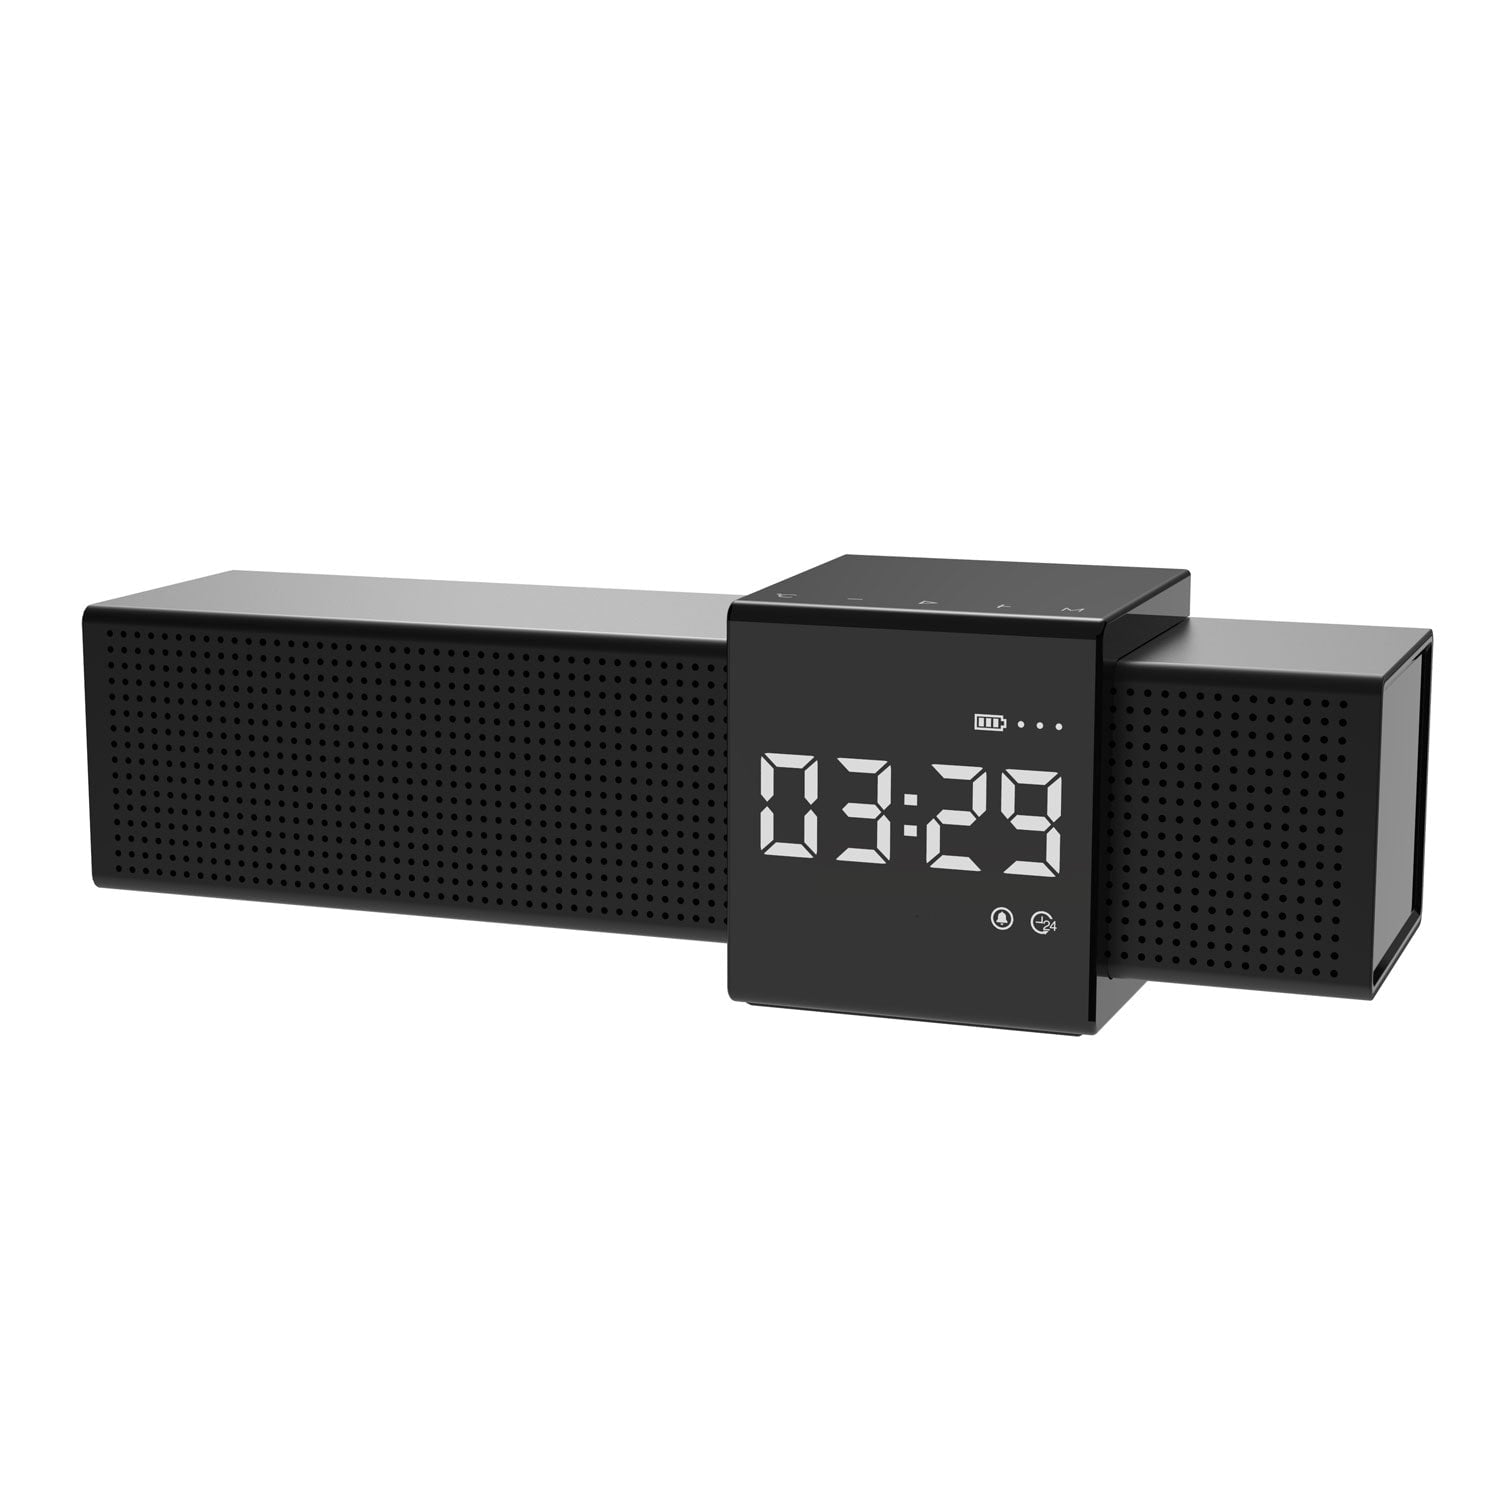 M28 Bluetooth Speaker Alarm Clock with FM Radio & Built-in Mic